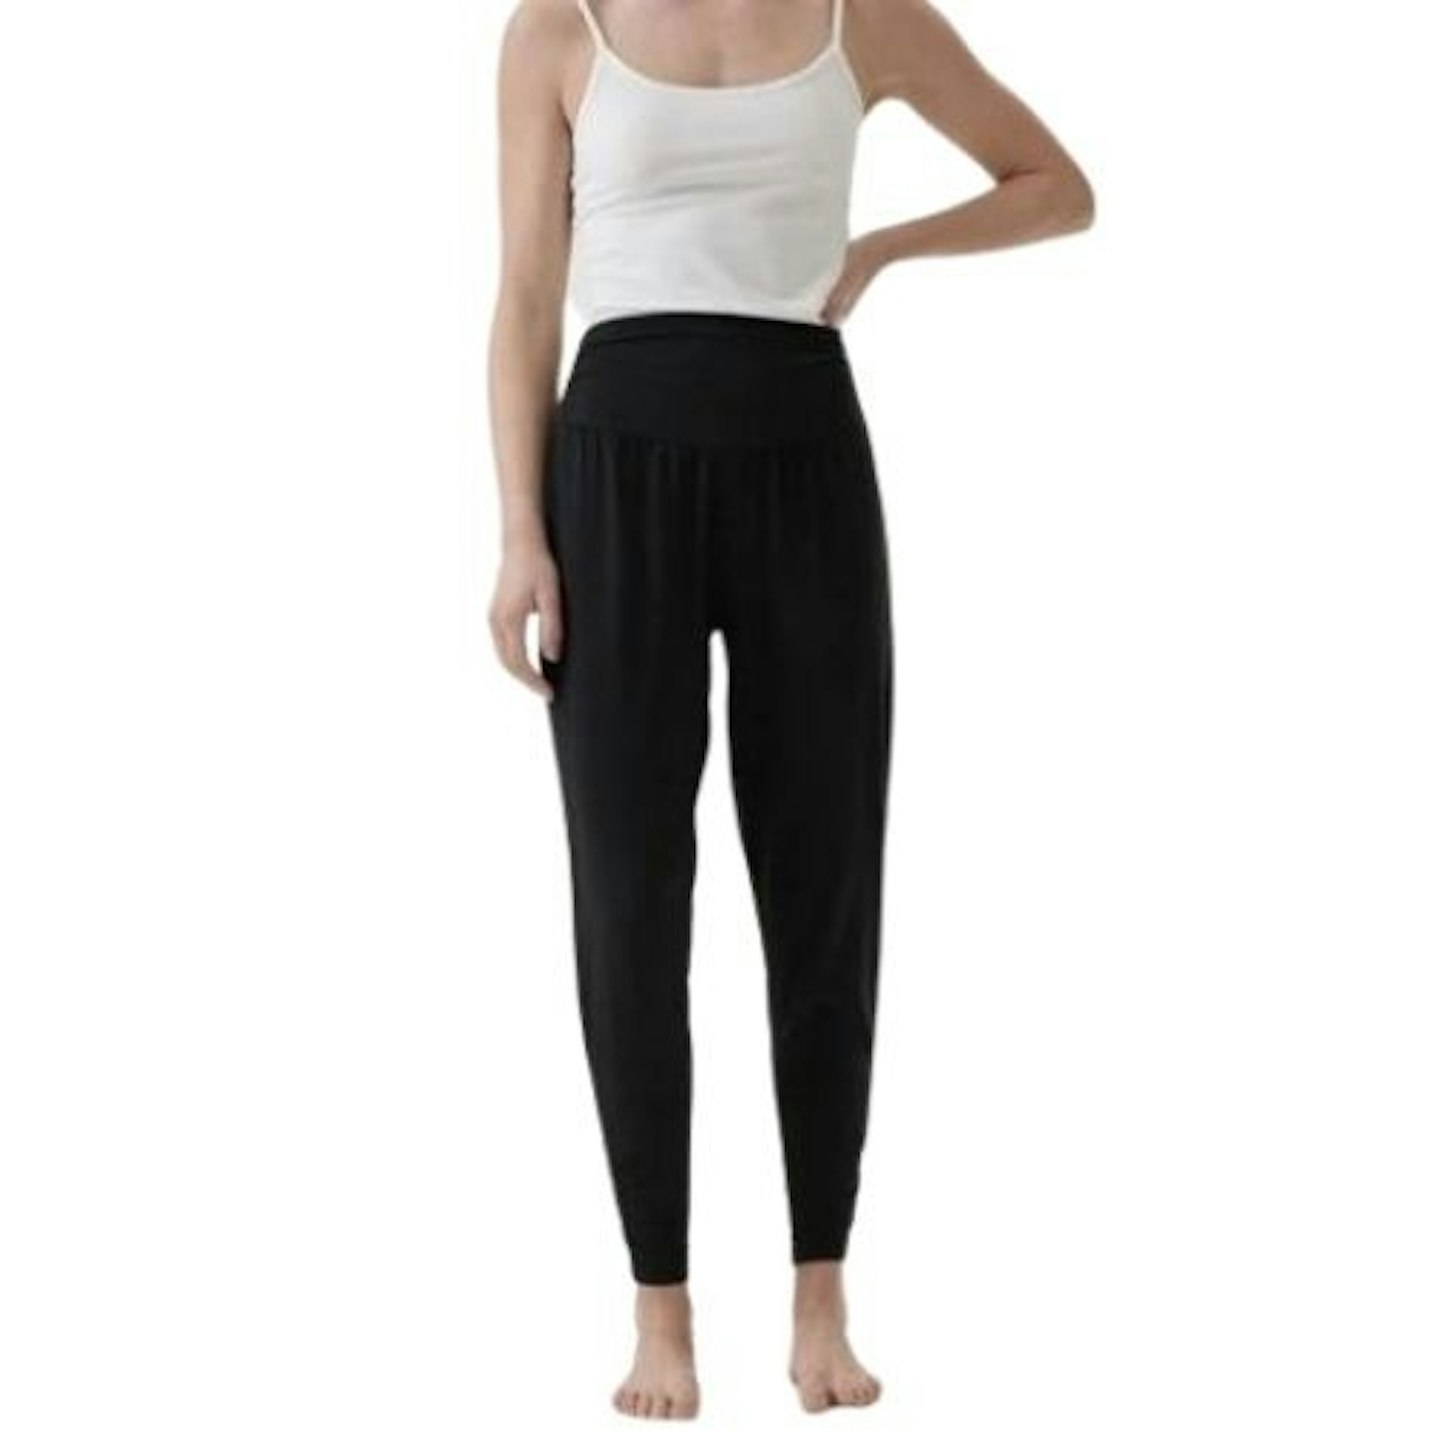 Grace Bamboo Yoga Pants